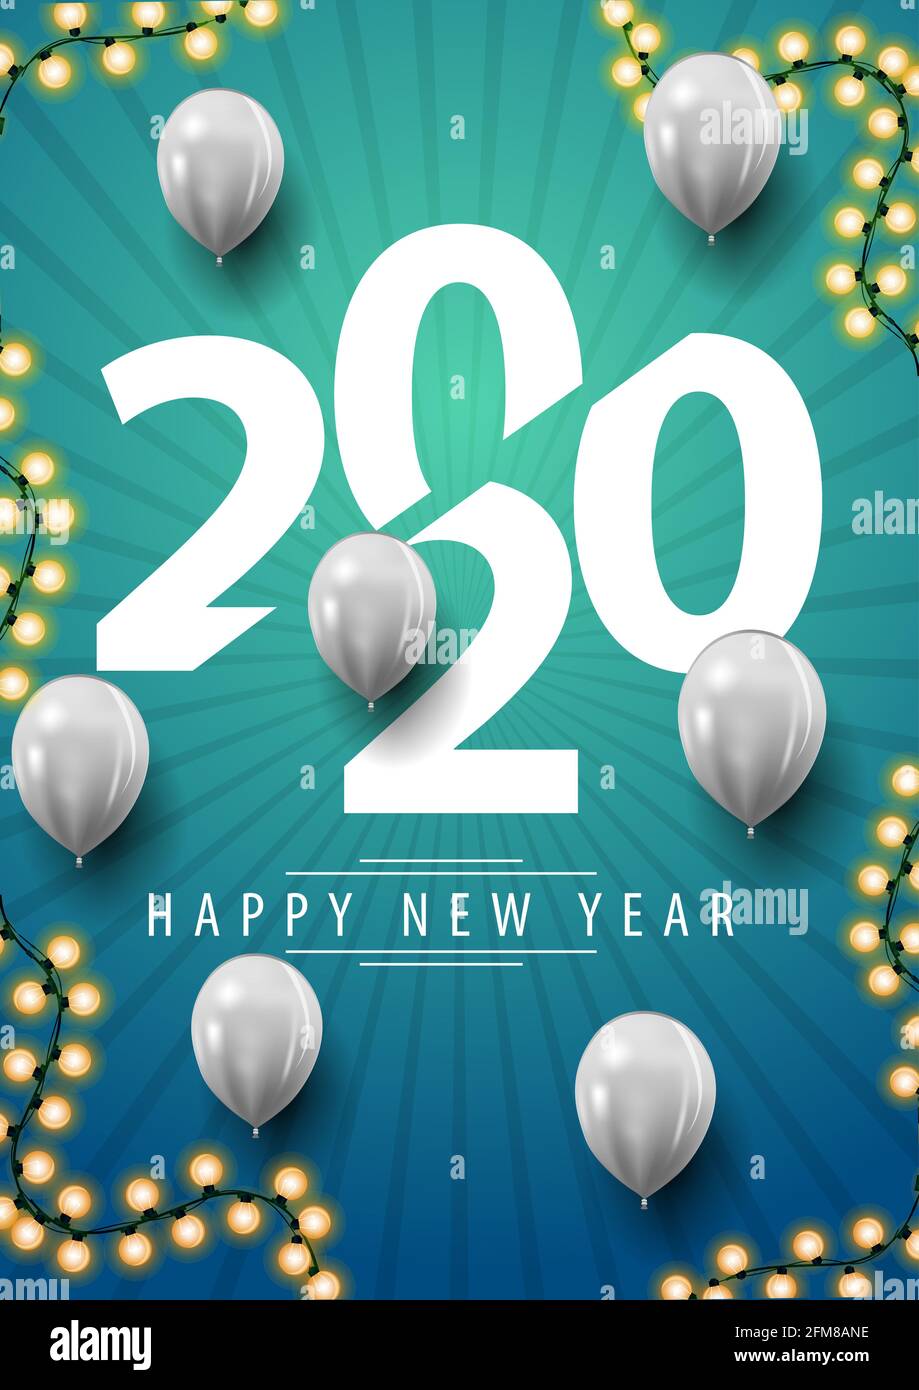 Bonne année, 2020, carte postale verticale bleue avec grands nombres, guirlande et ballons blancs Banque D'Images